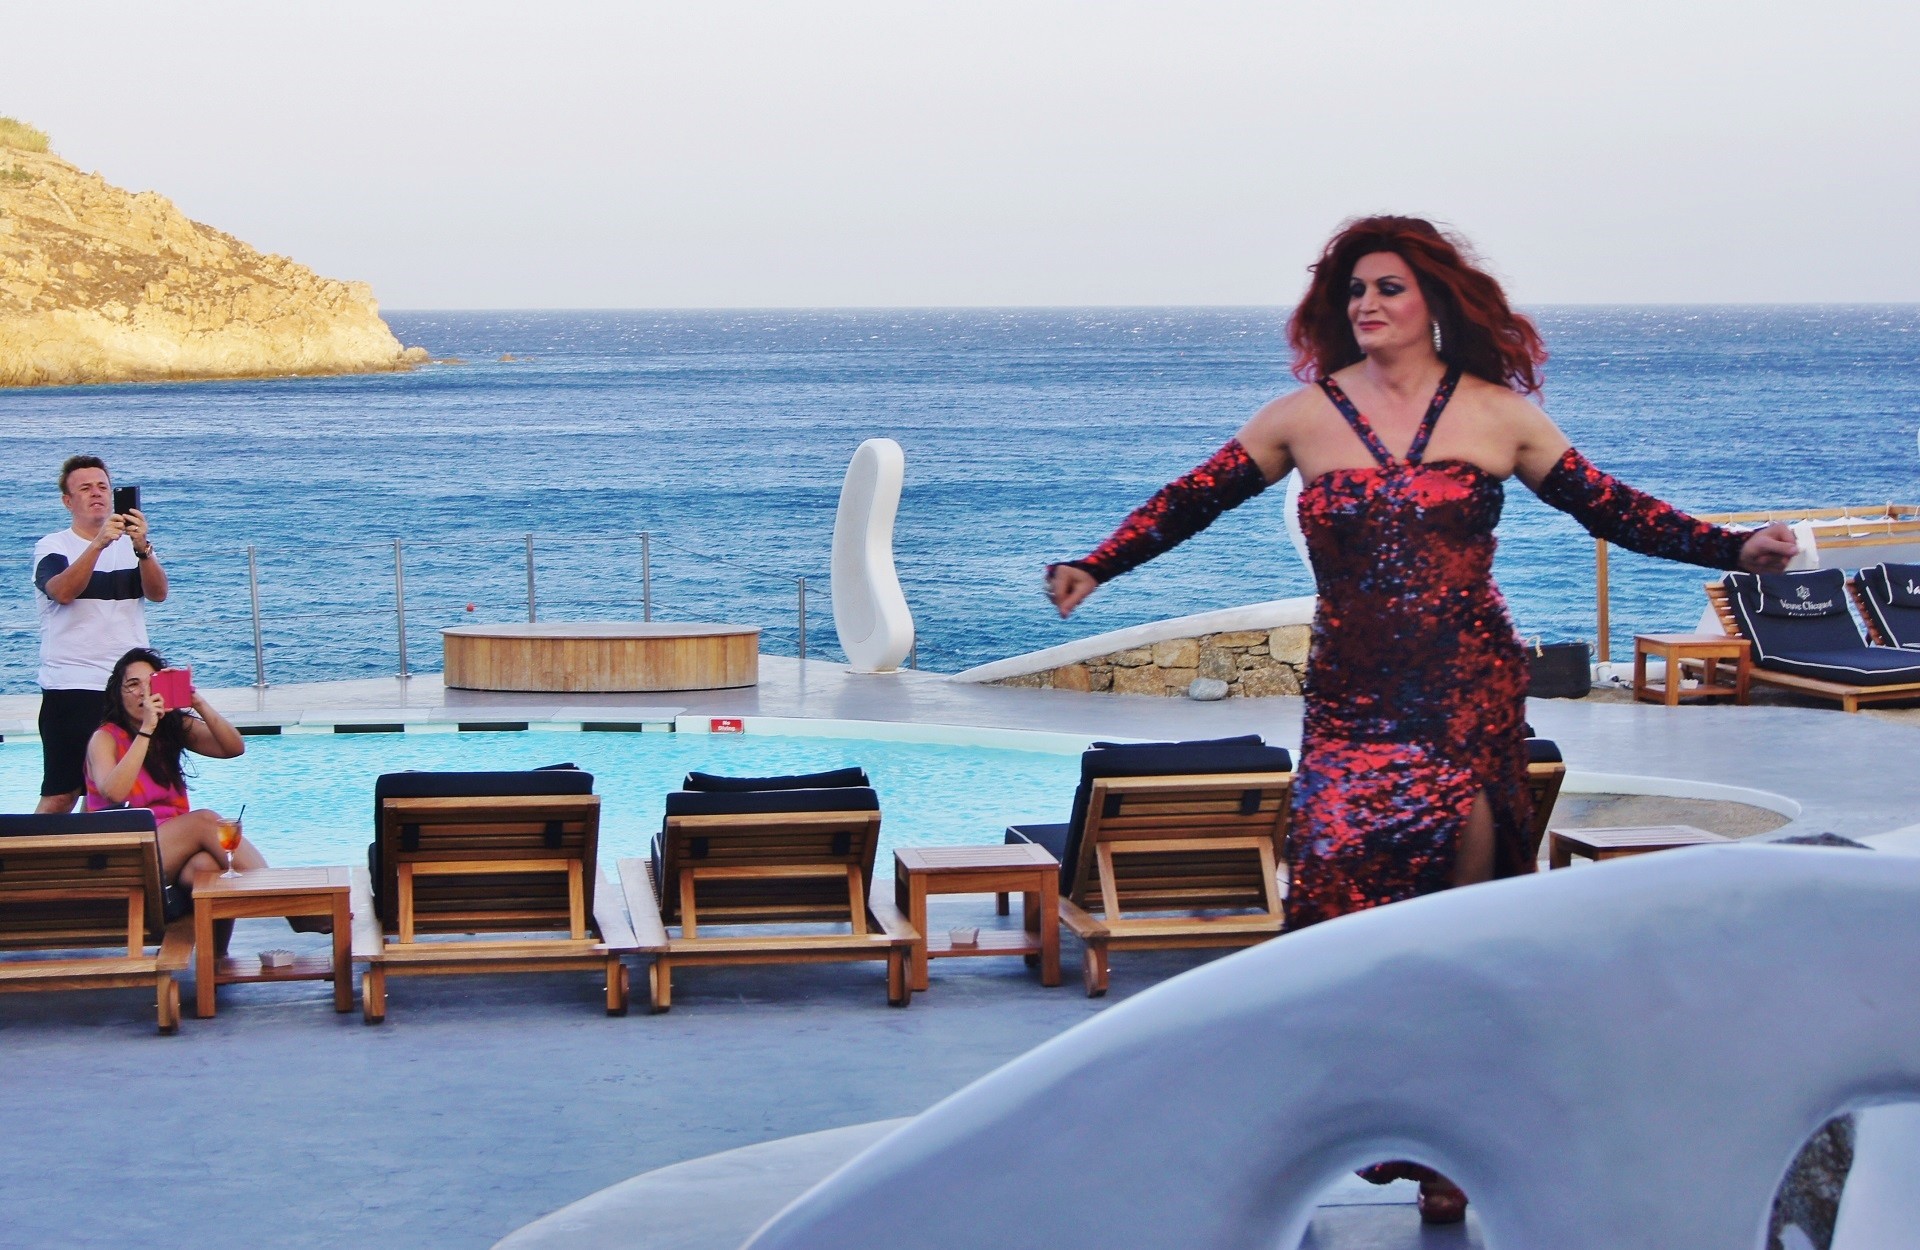 występ drag queen w bordowej cekinowej sukni na tle leżaków, basenu i morza